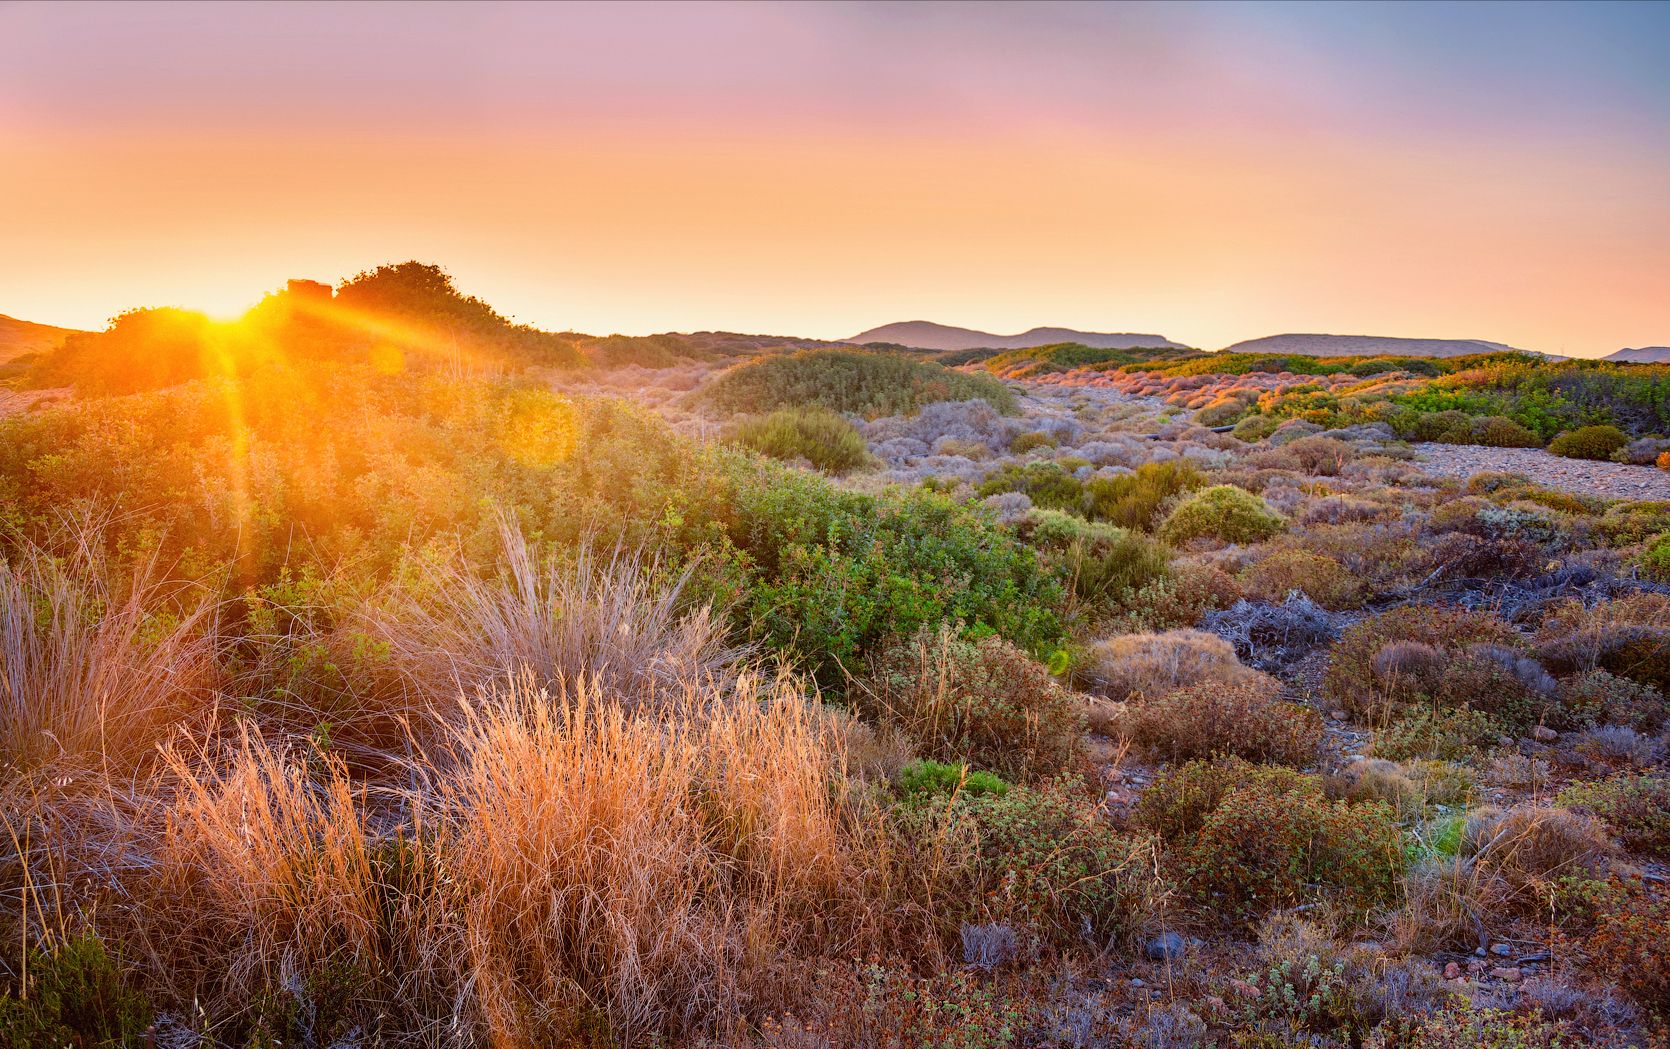 греция крит закат солнце лучи колючие кустарники мхи, Андрей Кобыща